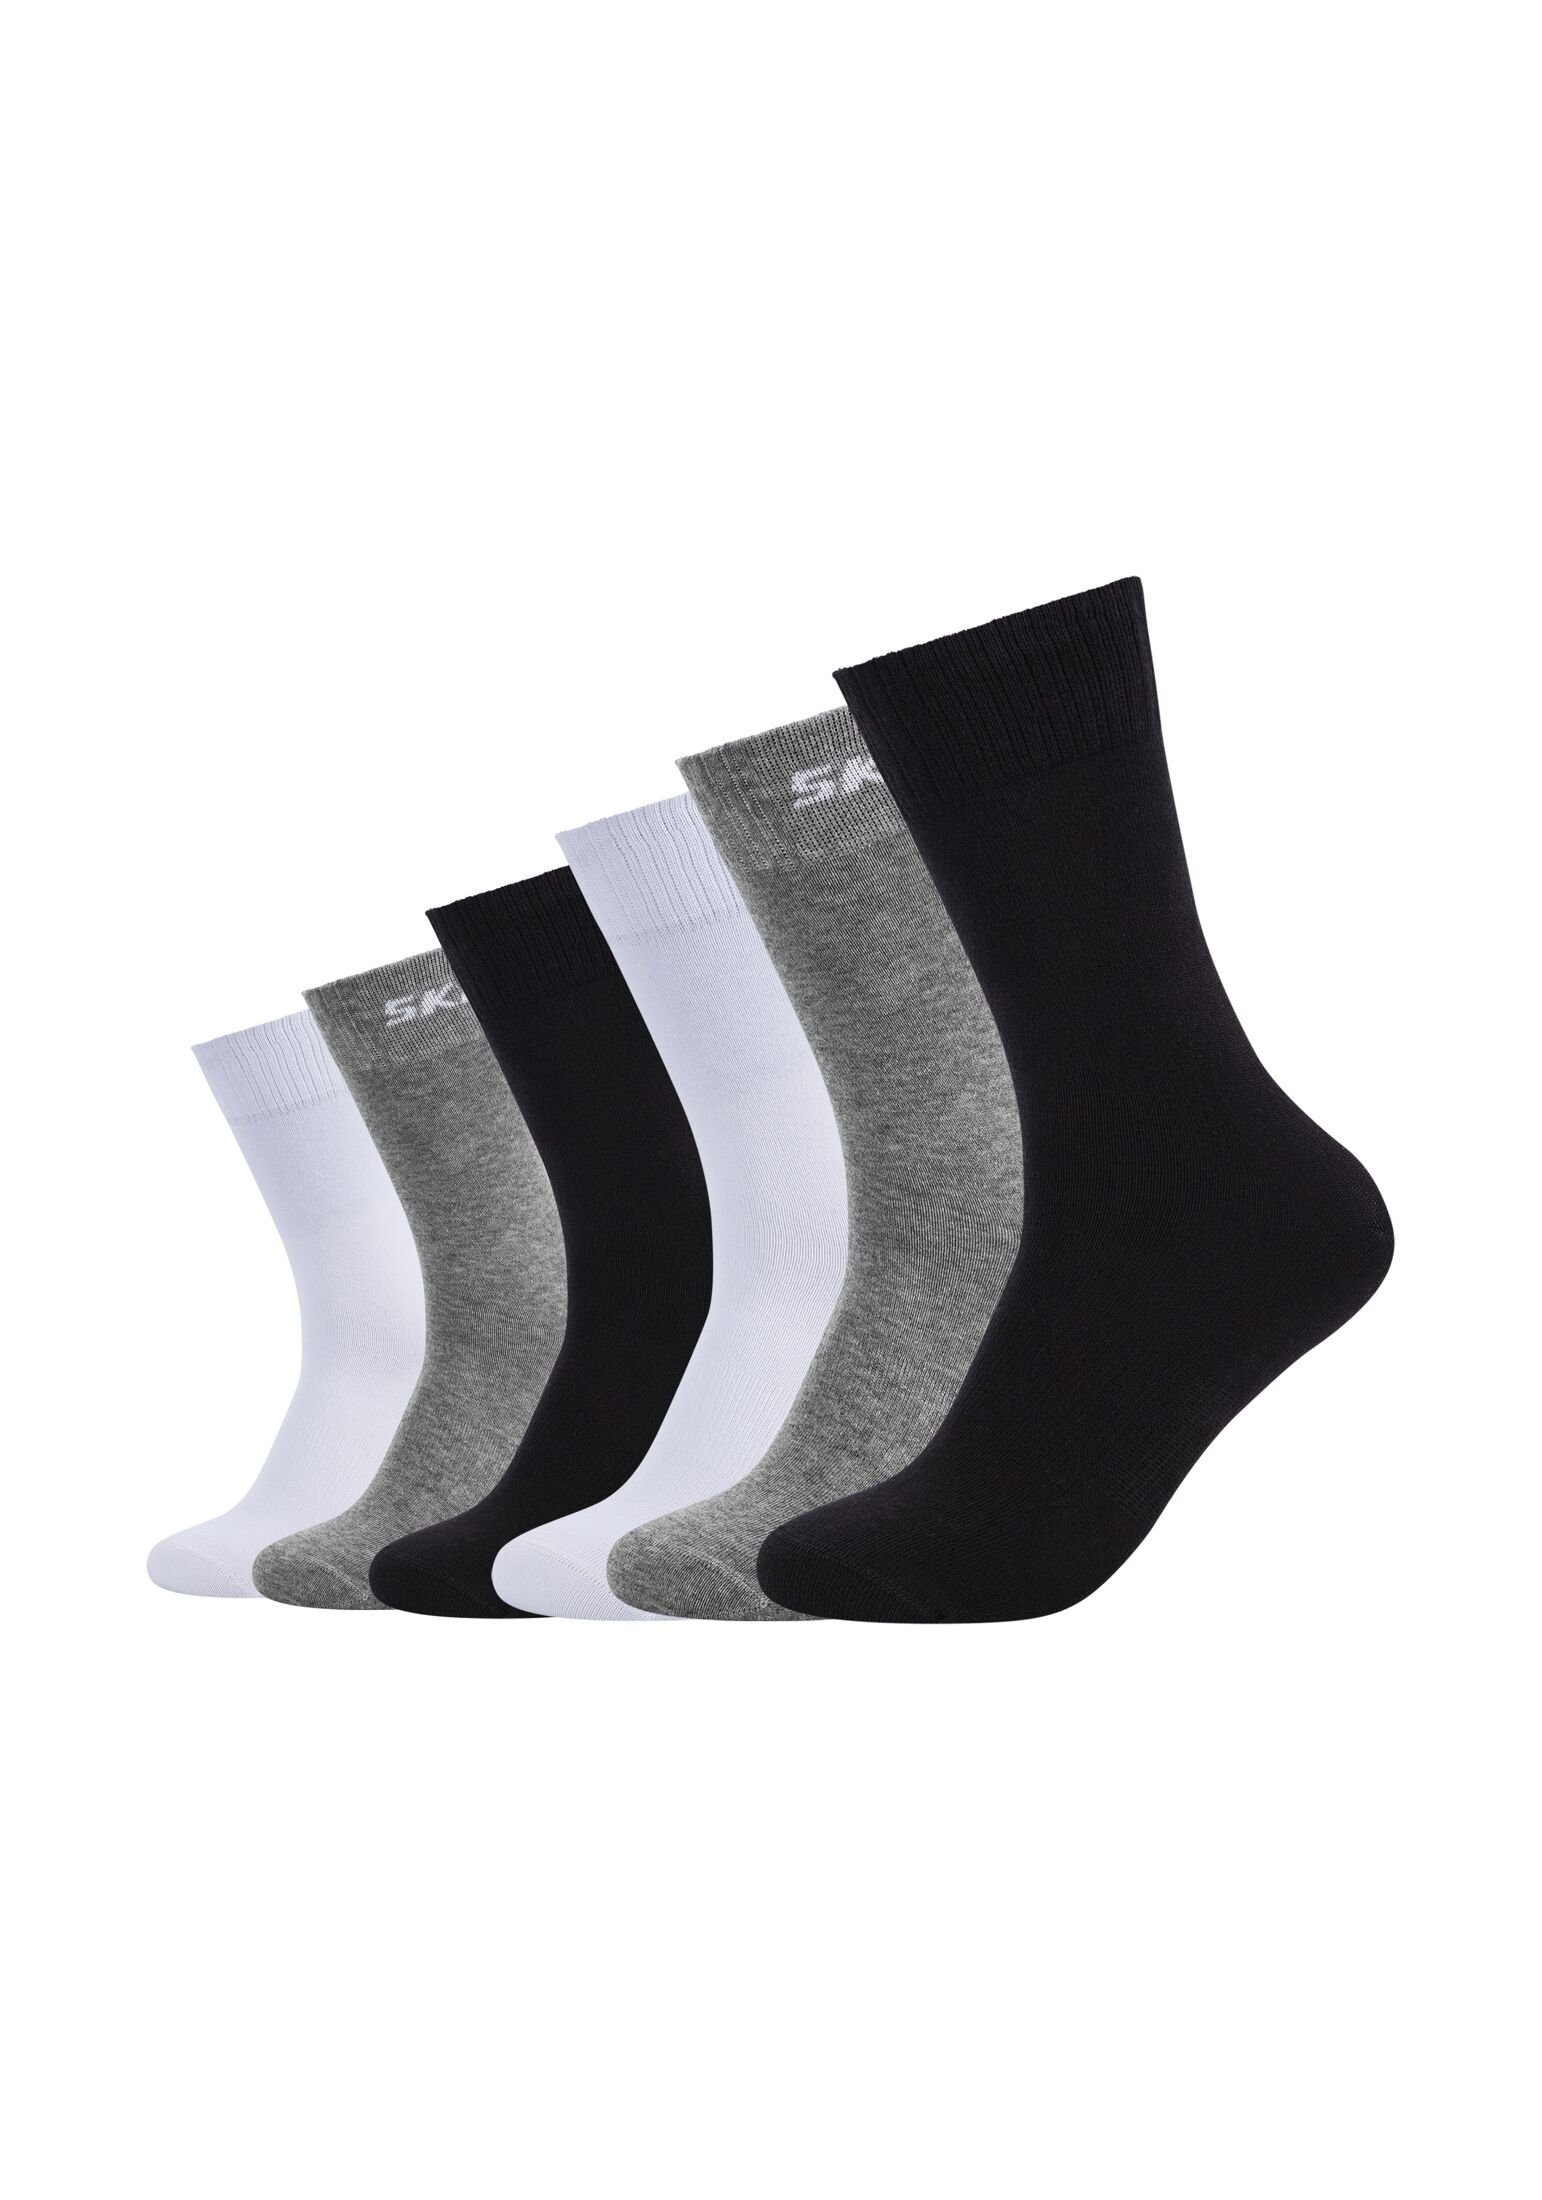 Skechers Socken Socken 6er Pack black/grey mix